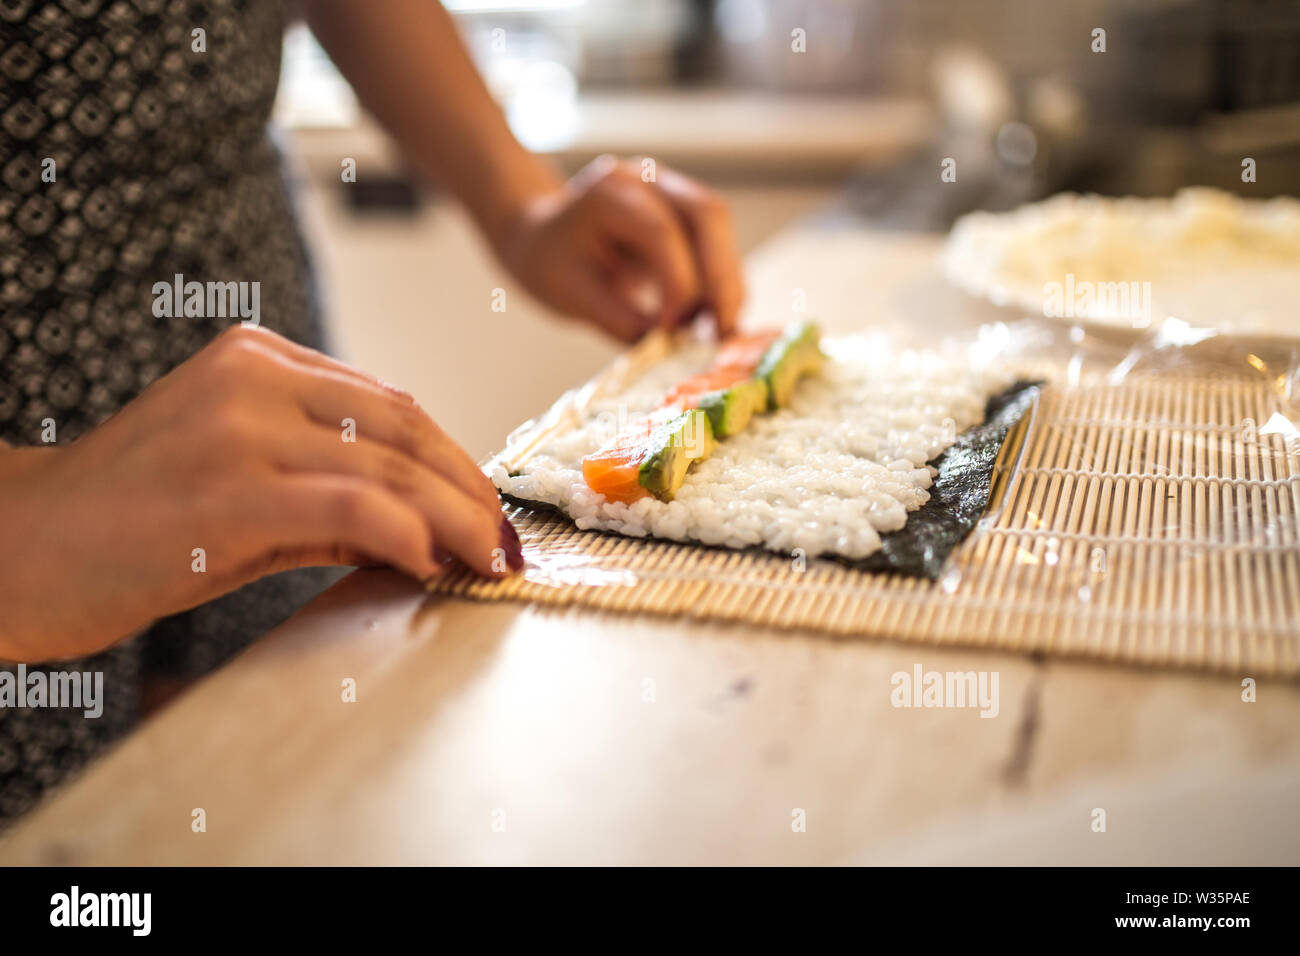 Una mujer preparando y rollos de sushi casero. Formando el sushi. Vista de proceso de preparar sushi de laminación. Foto de stock